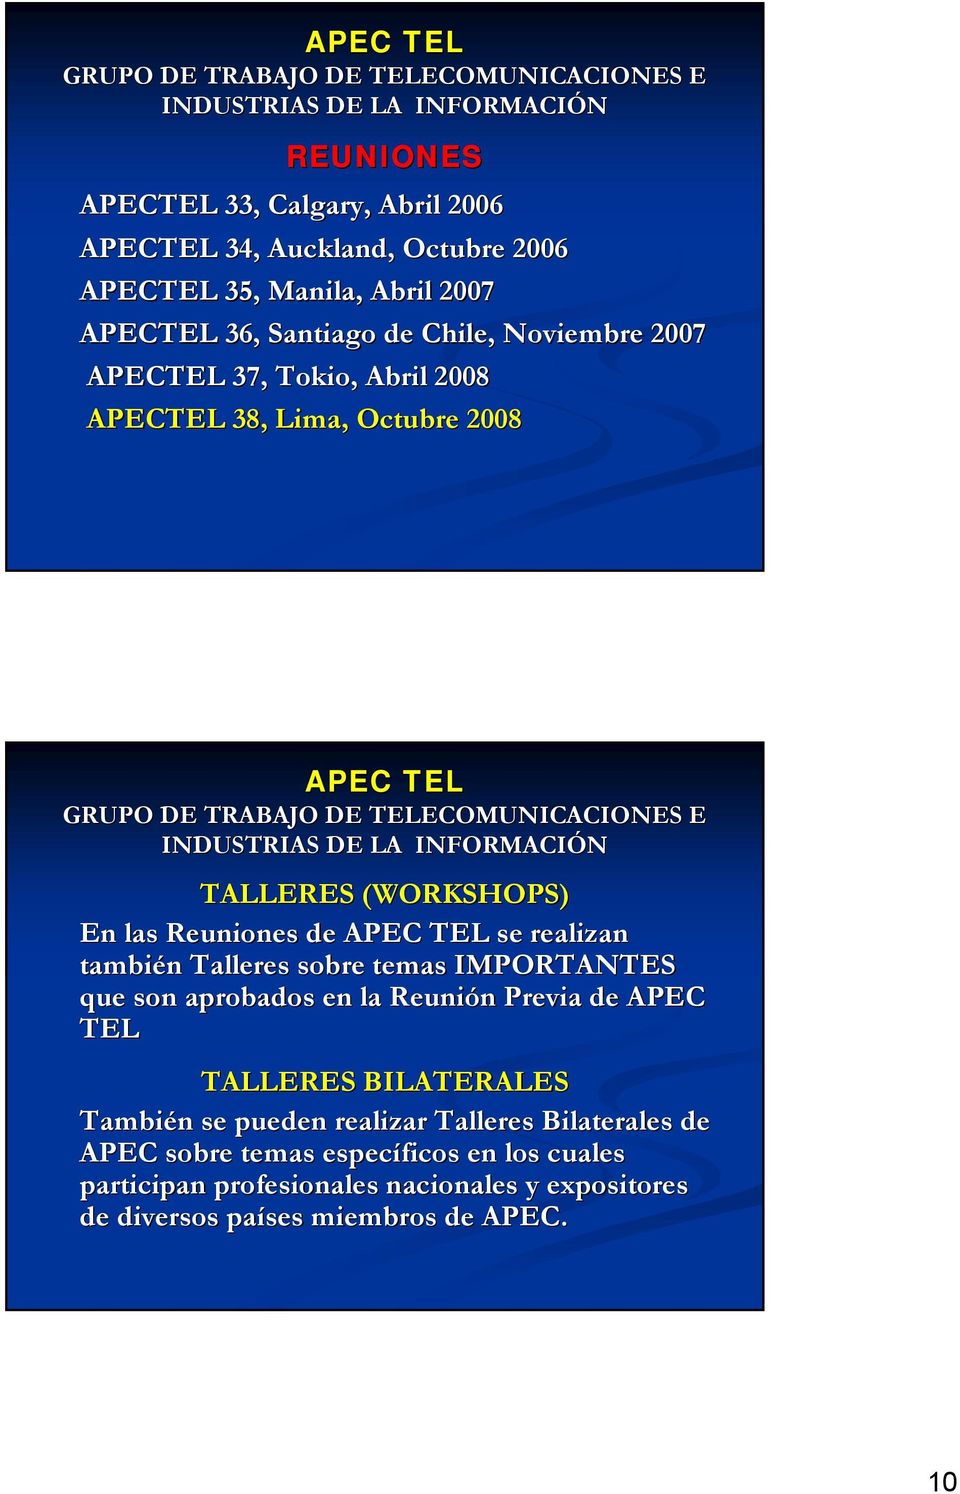 INFORMACIÓN TALLERES (WORKSHOPS) En las Reuniones de APEC TEL se realizan también Talleres sobre temas IMPORTANTES que son aprobados en la Reunión Previa de APEC TEL TALLERES